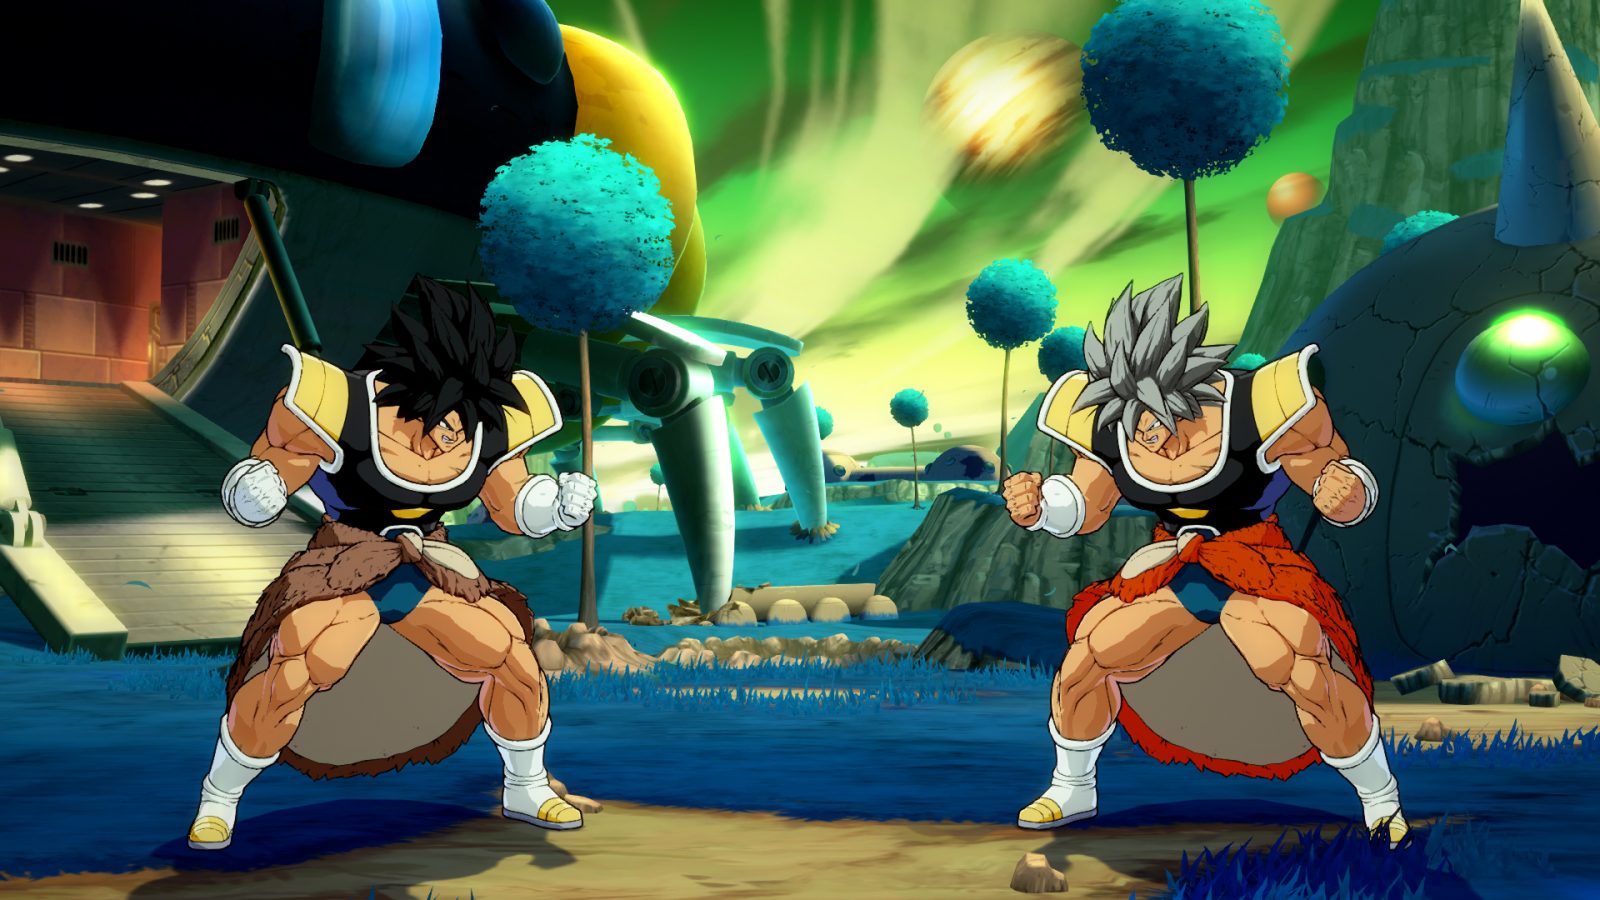 DBAFpic of SSJ5 Broly and Goku image - DBZ Fanz of Moddb - ModDB